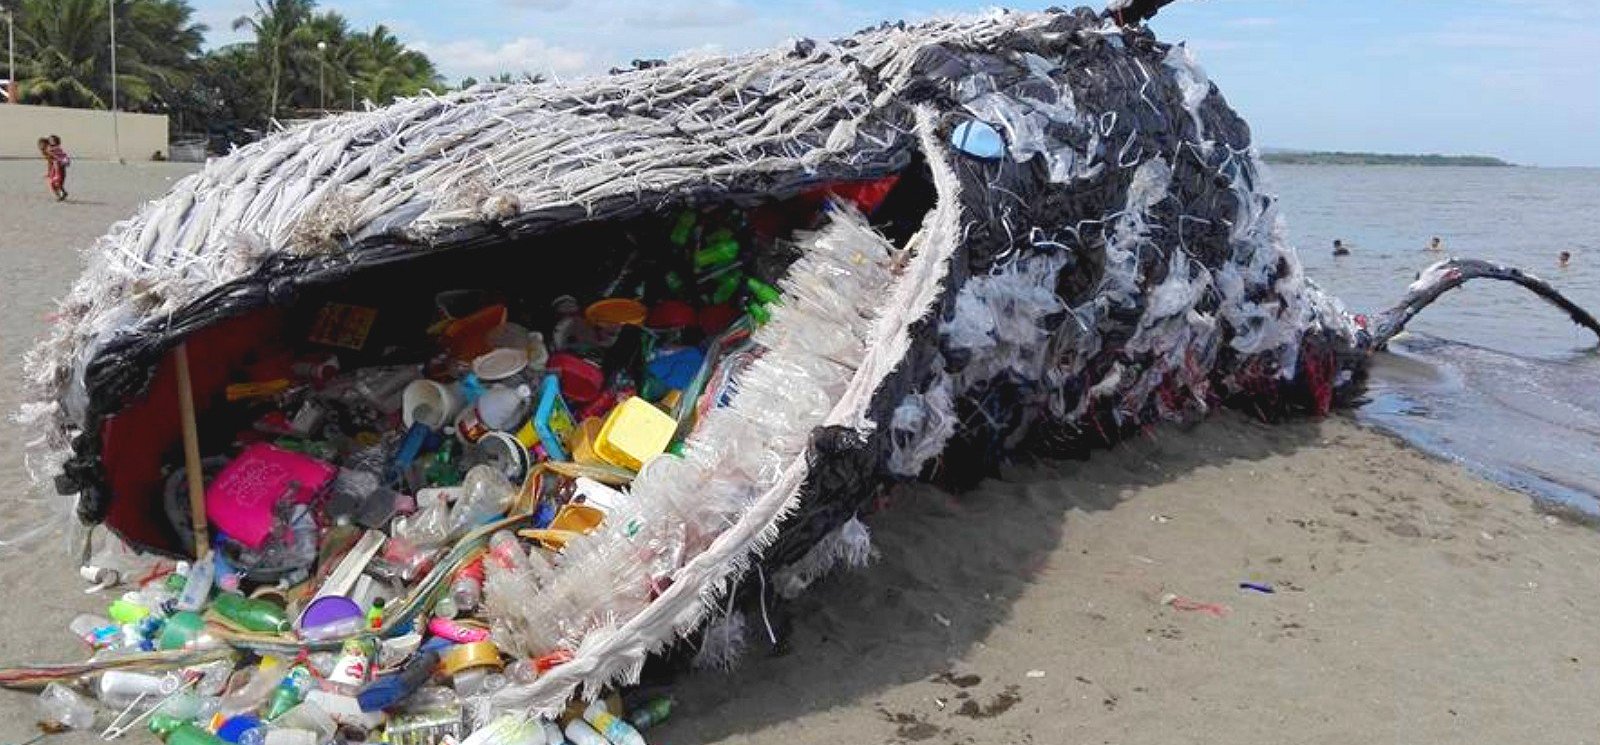 Soha ennyi műanyagot nem találtak egyetlen bálnában sem